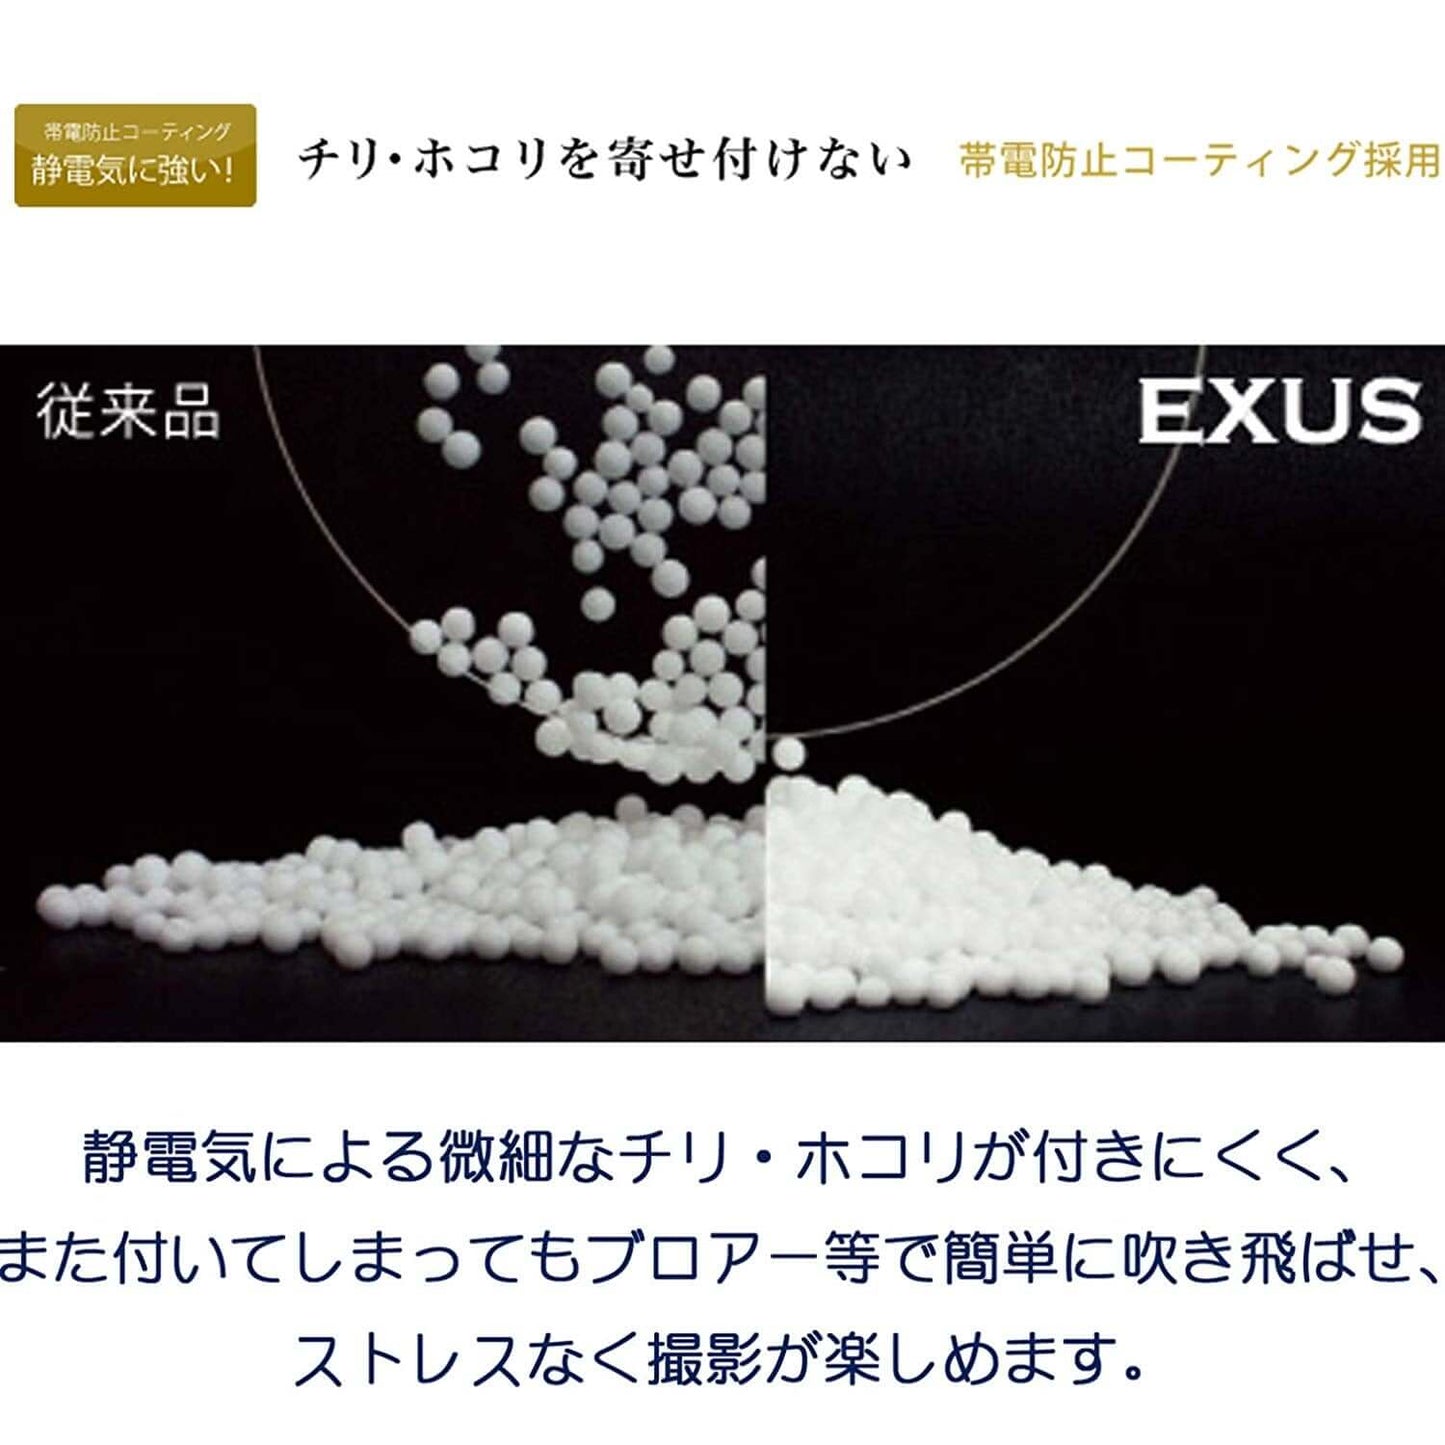 EXUS レンズプロテクト 77mm